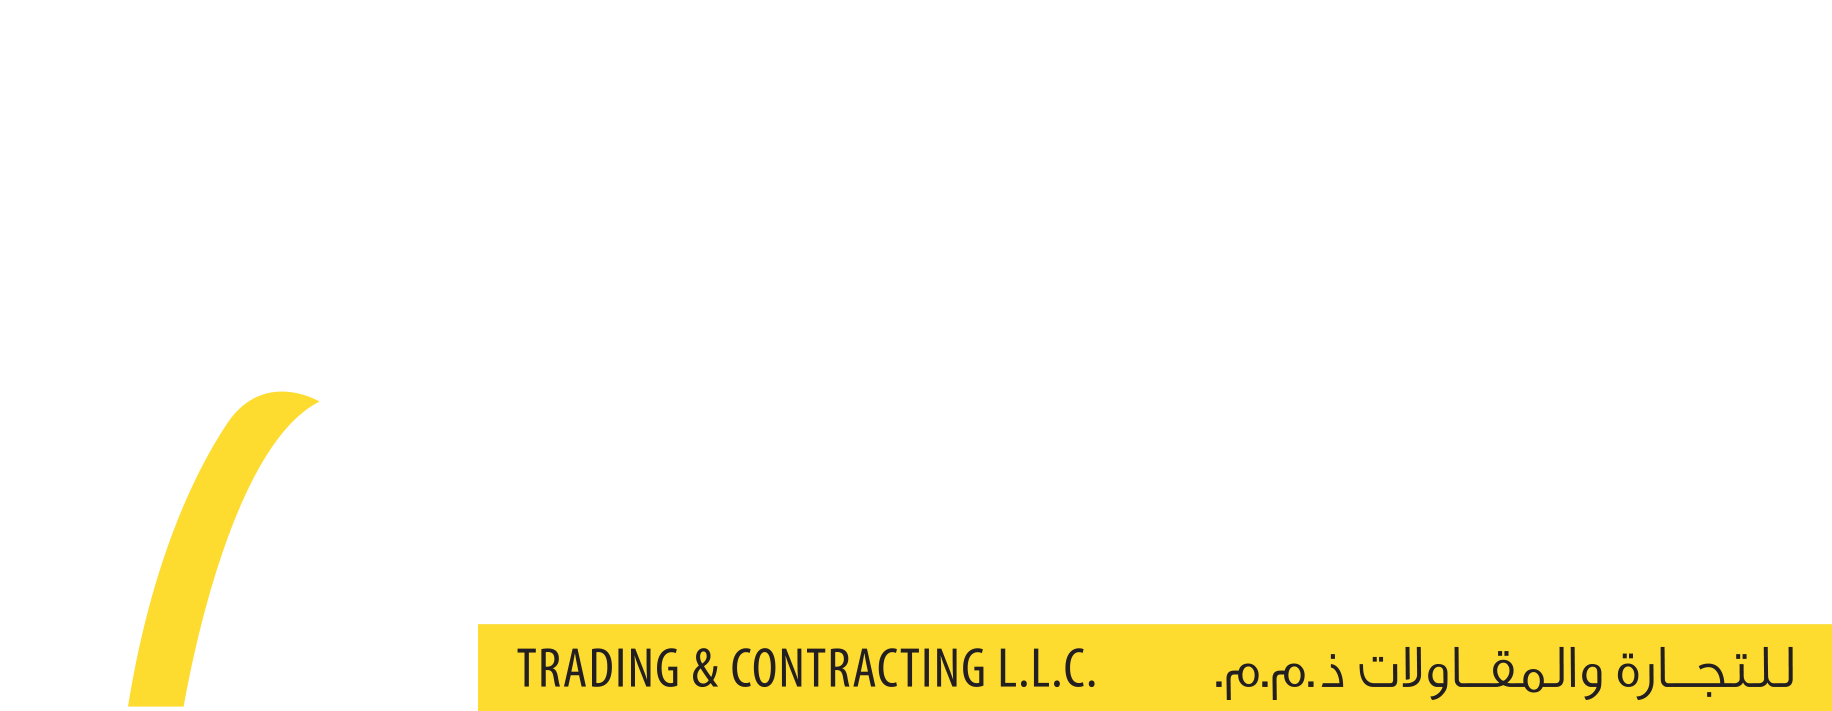 Thumbnails - Al Alia Trading & Contracting Co Wll Qatar (2000x800), Png Download